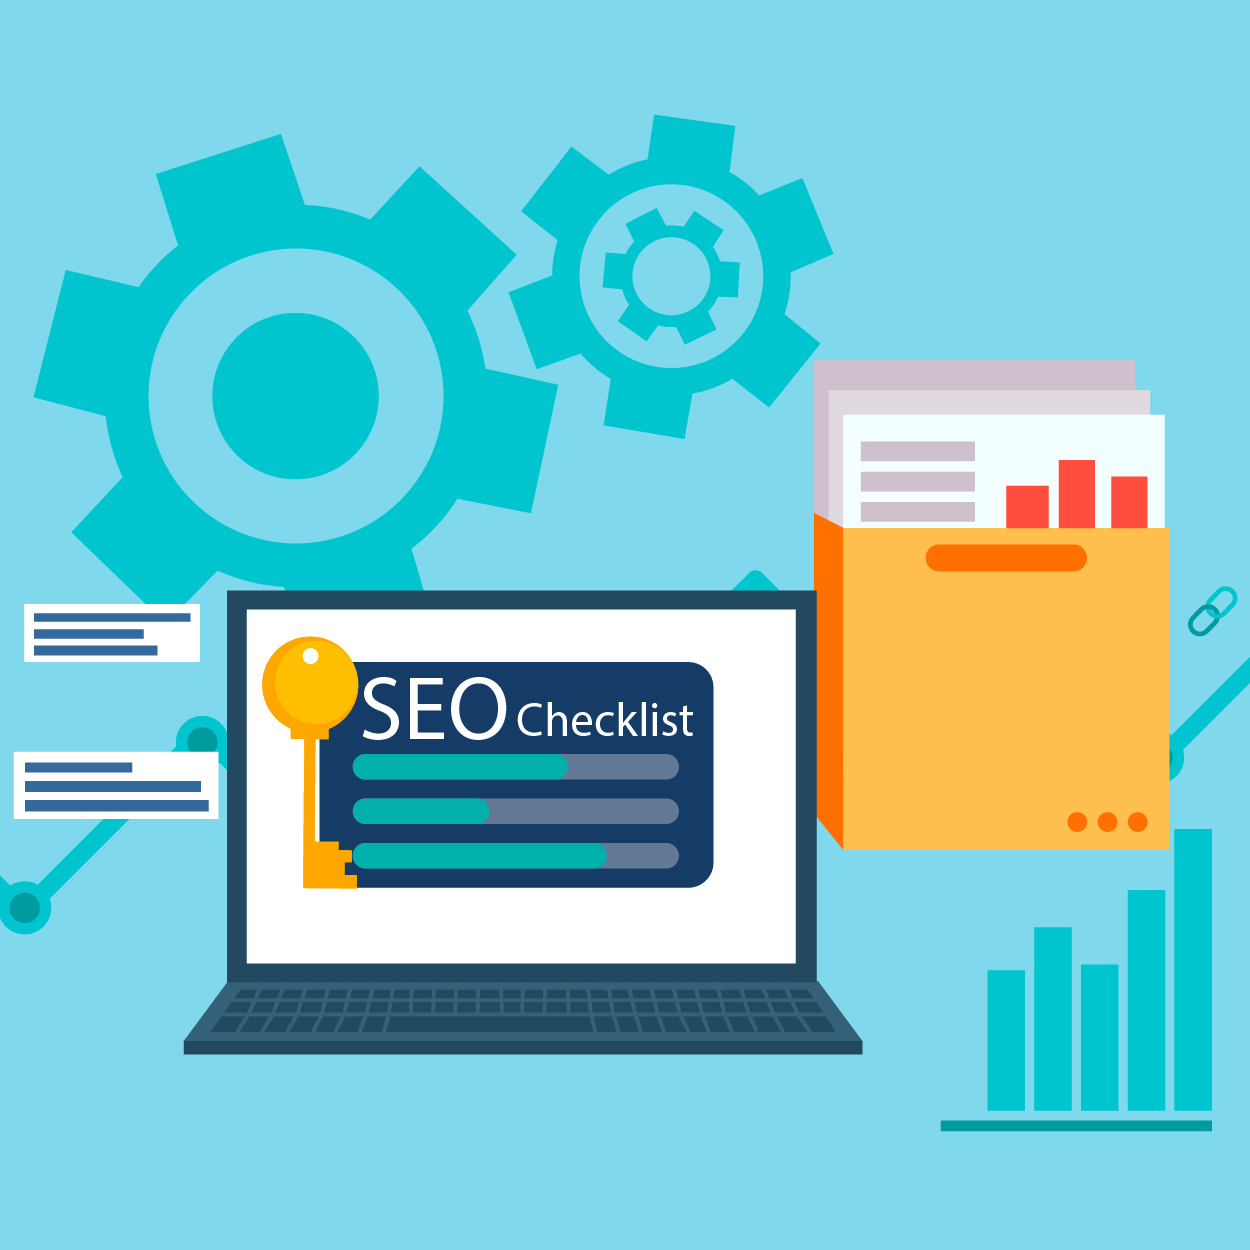 SEO (Search Engine Optimization) Checklist 2020